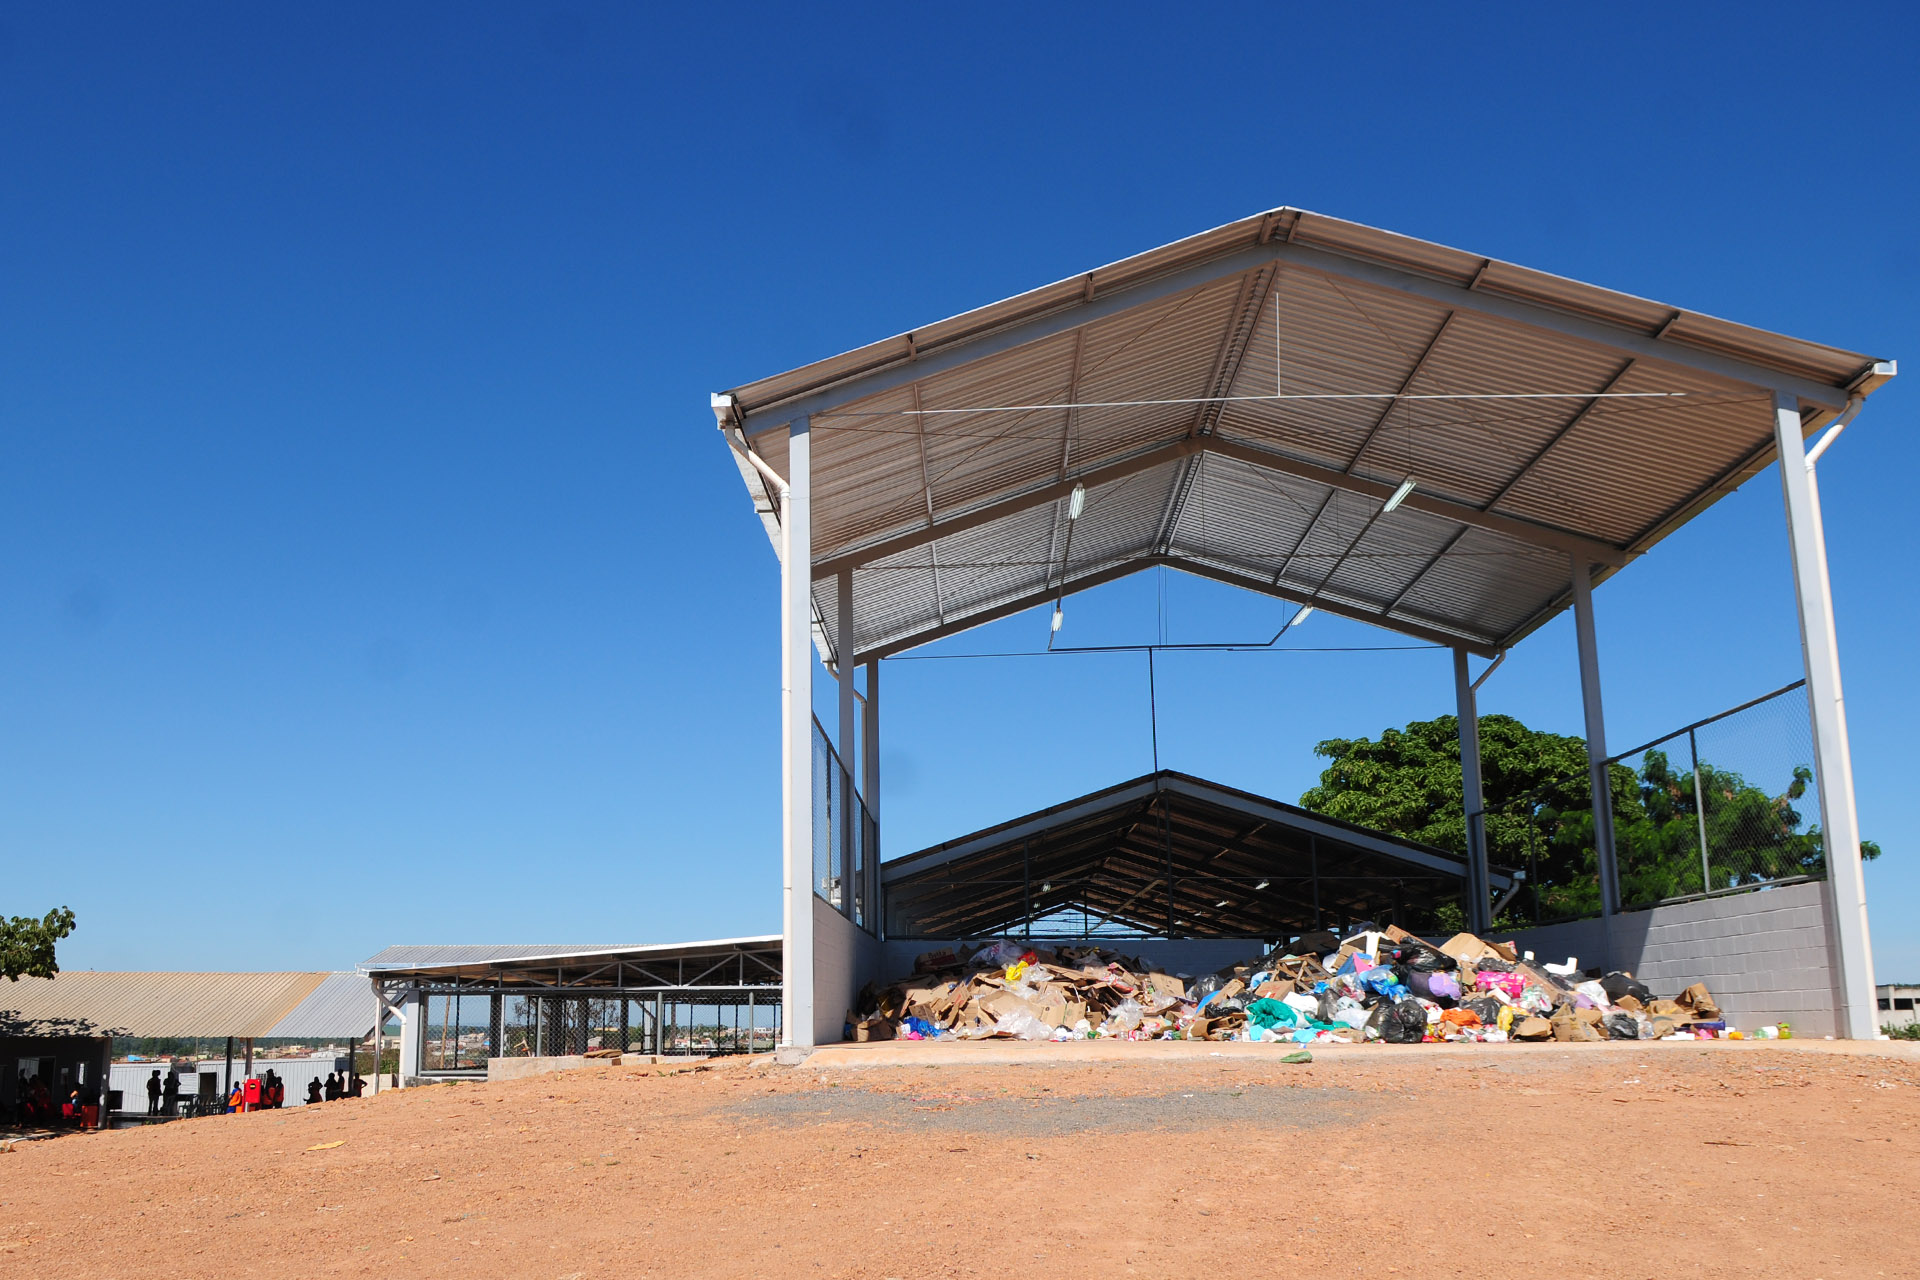 Com capacidade para receber até 20 toneladas de resíduos por dia, a instalação será ocupada pela Associação dos Catadores e Recicladores de Resíduos Sólidos de Brazlândia (Acobraz). A organização tem contratos de triagem e coleta seletiva com o Serviço de Limpeza Urbana (SLU) e já atuava no local.